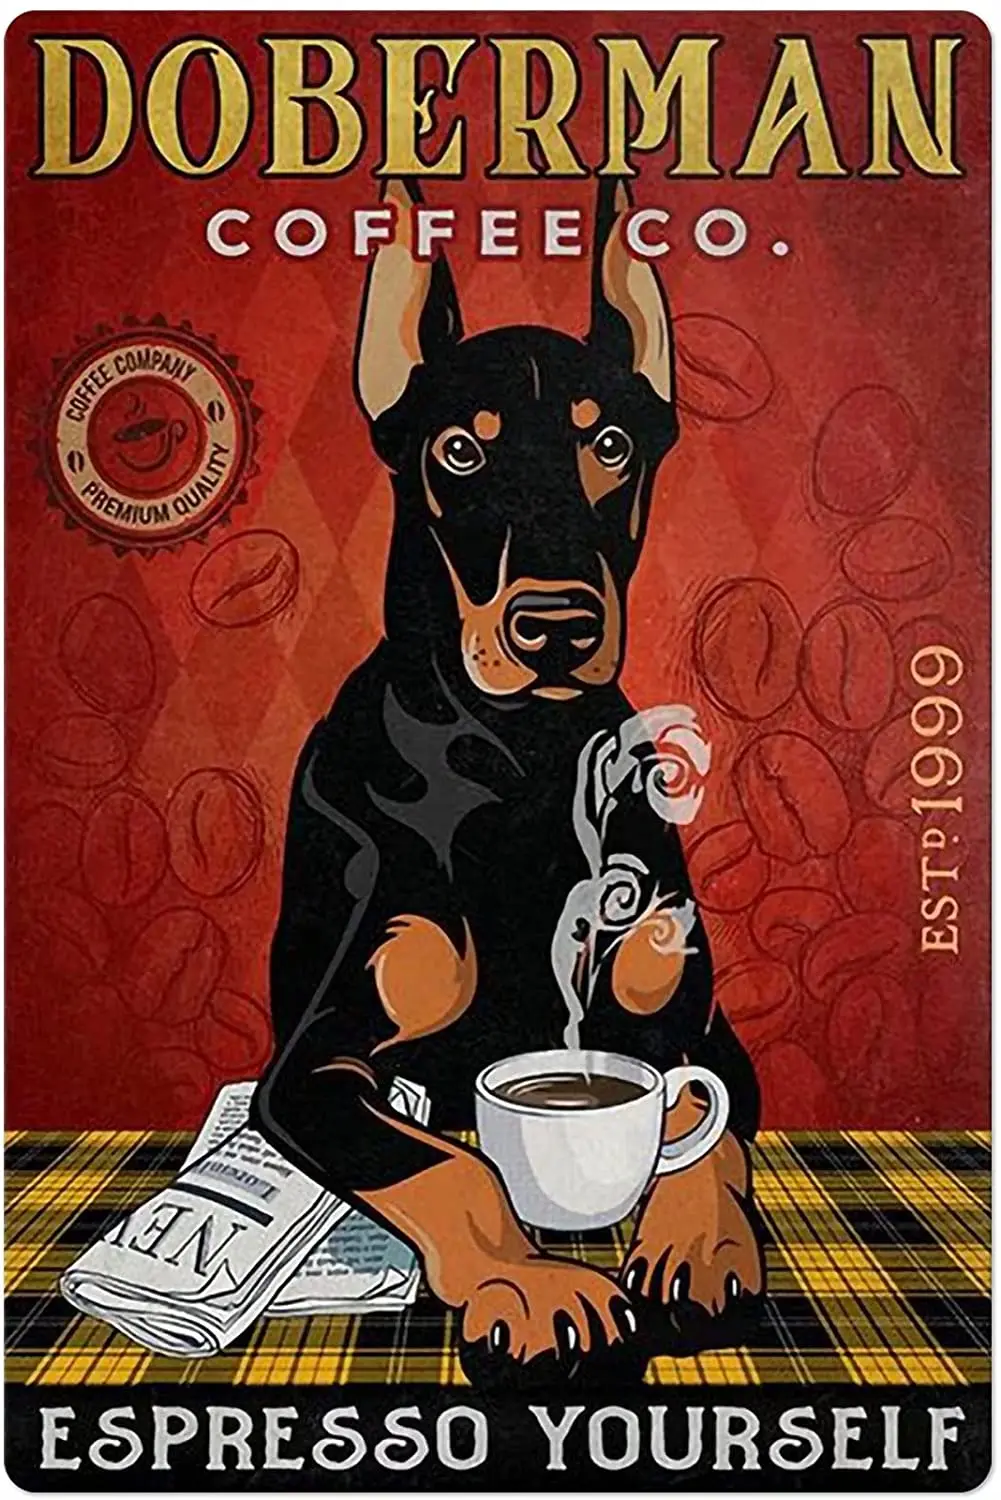 

Собака и кофе металлический жестяной логотип Doberman кофейная компания ретро печать плакат Бар Ресторан Кафе настенное украшение табличка